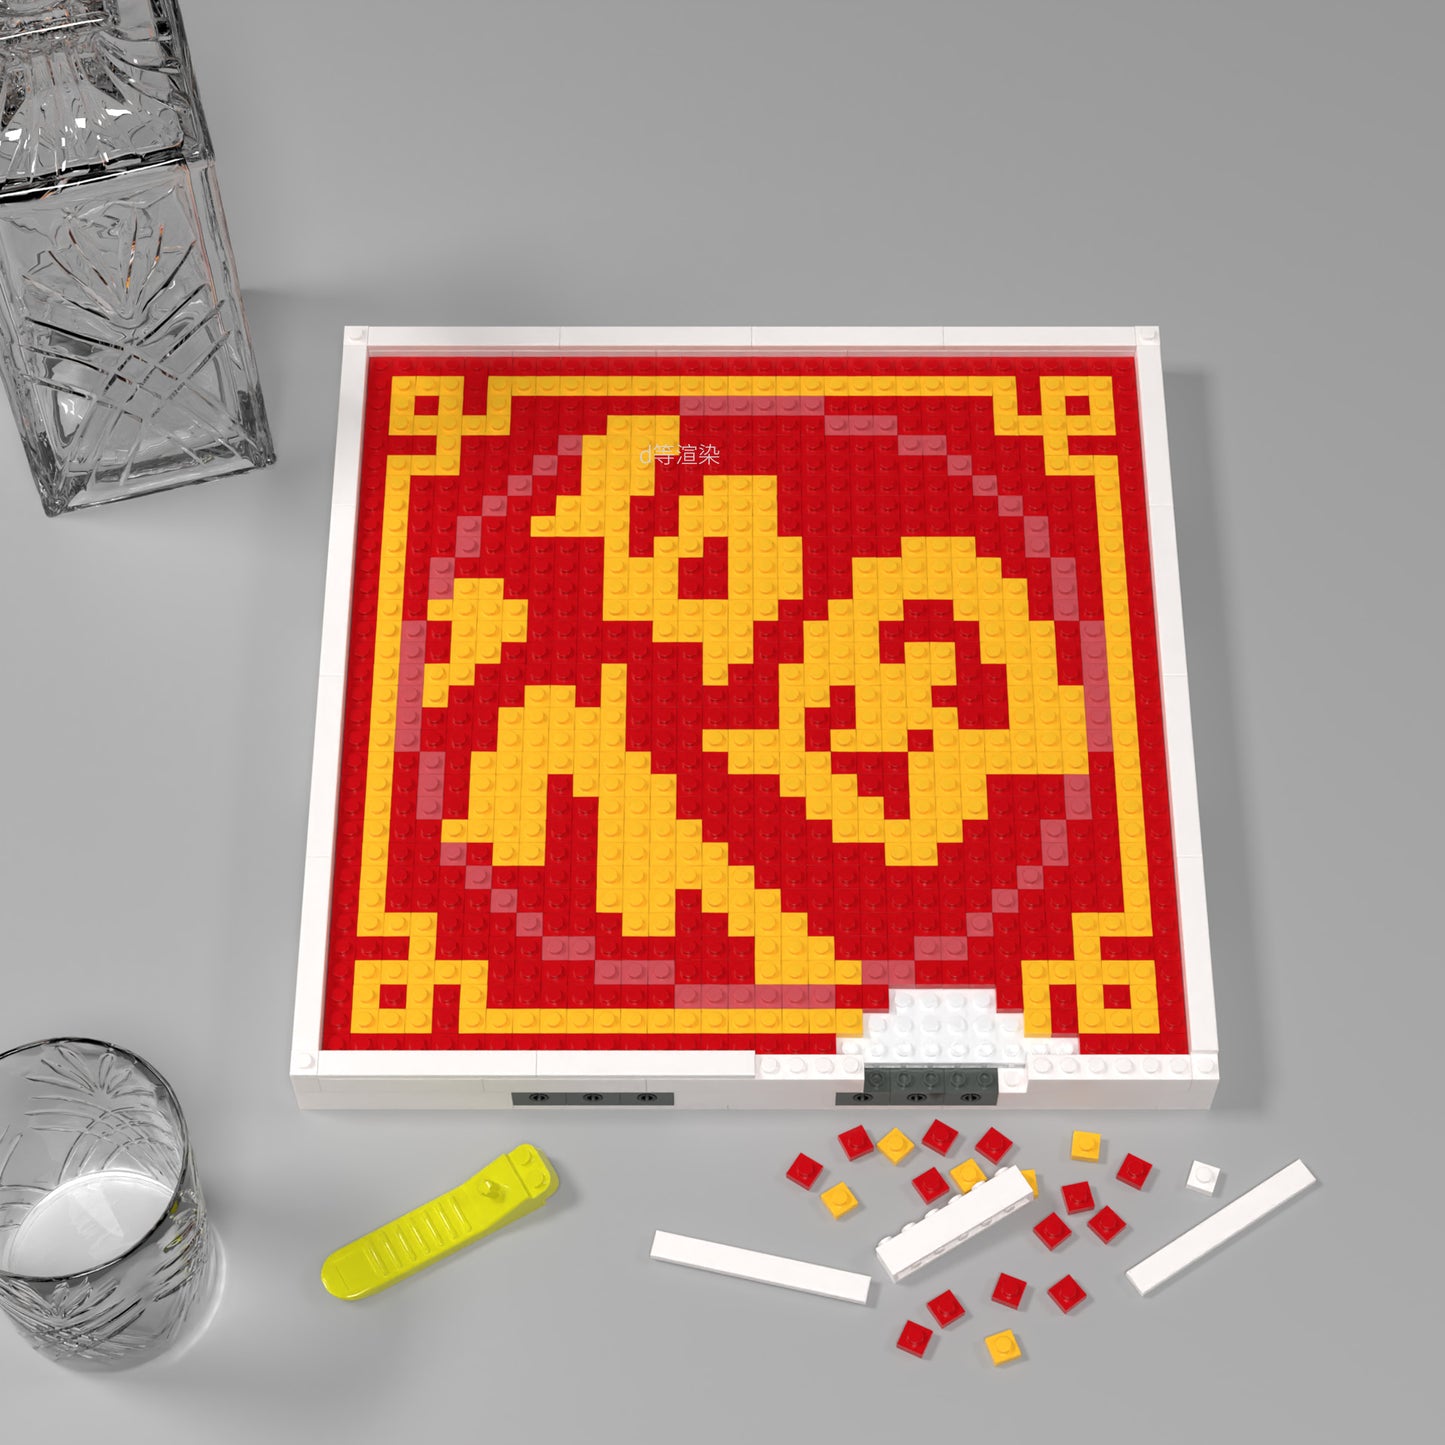 32*32 Compatible Lego Building Brick  "Fu" Pixel Art